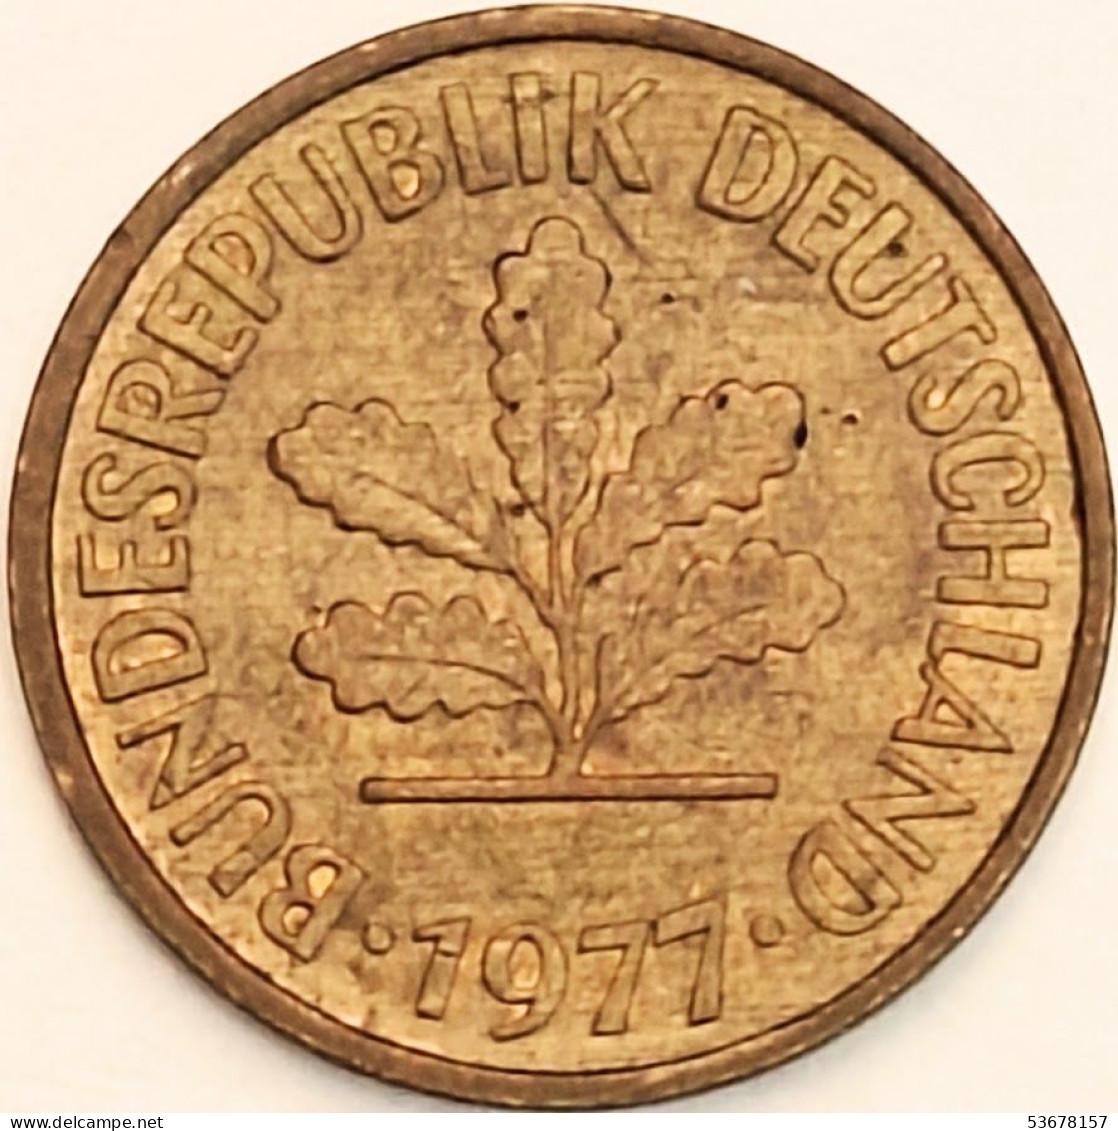 Germany Federal Republic - 5 Pfennig 1977 G, KM# 107 (#4584) - 5 Pfennig